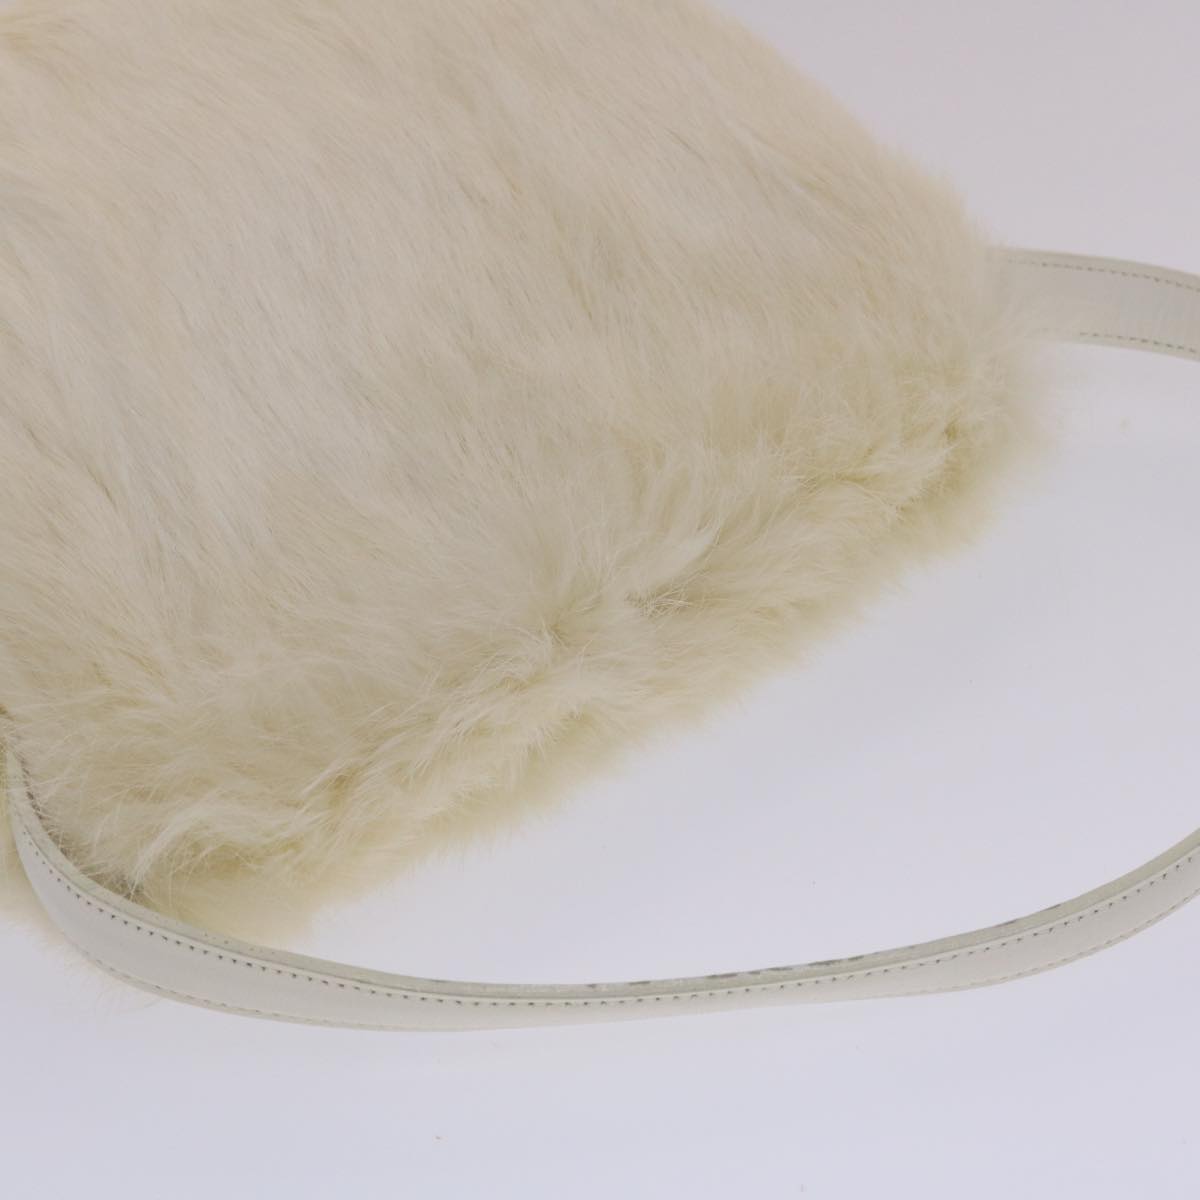 Burberrys Shoulder Bag Fur White Auth 48885